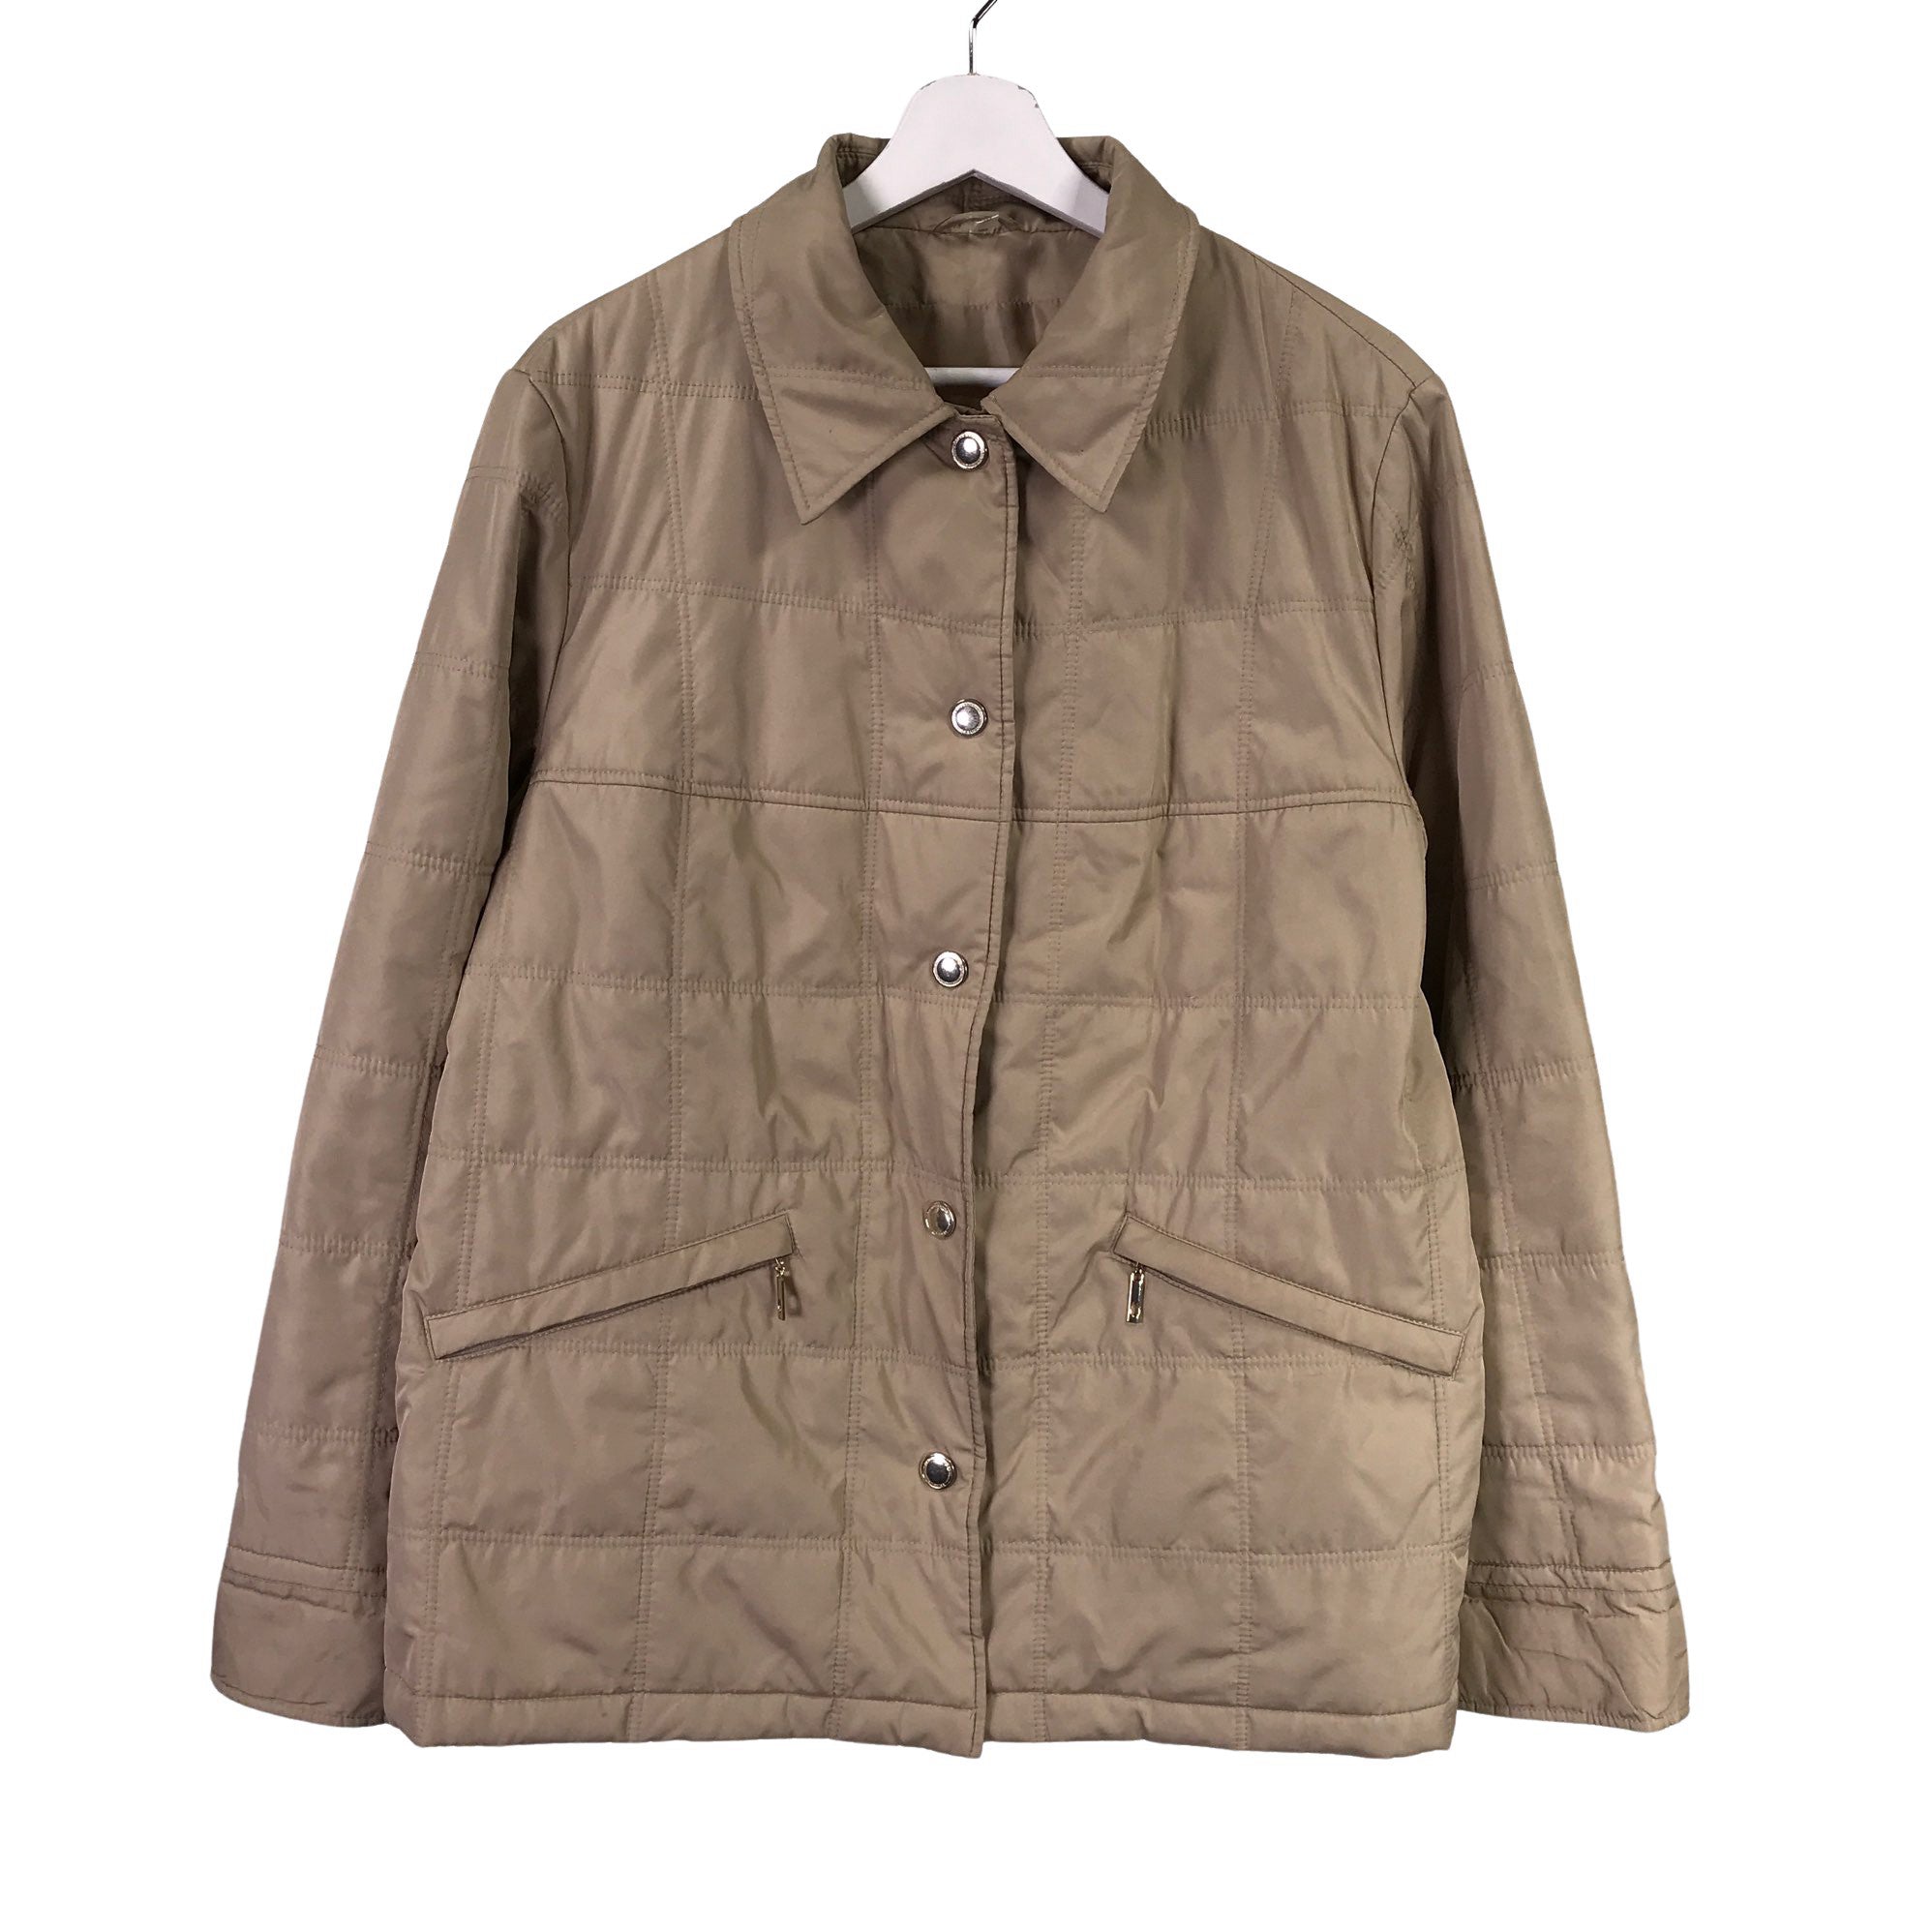 Muf Aap Afleiden Women's Atelier Gardeur Quilted jacket, size 44 (Beige) | Emmy